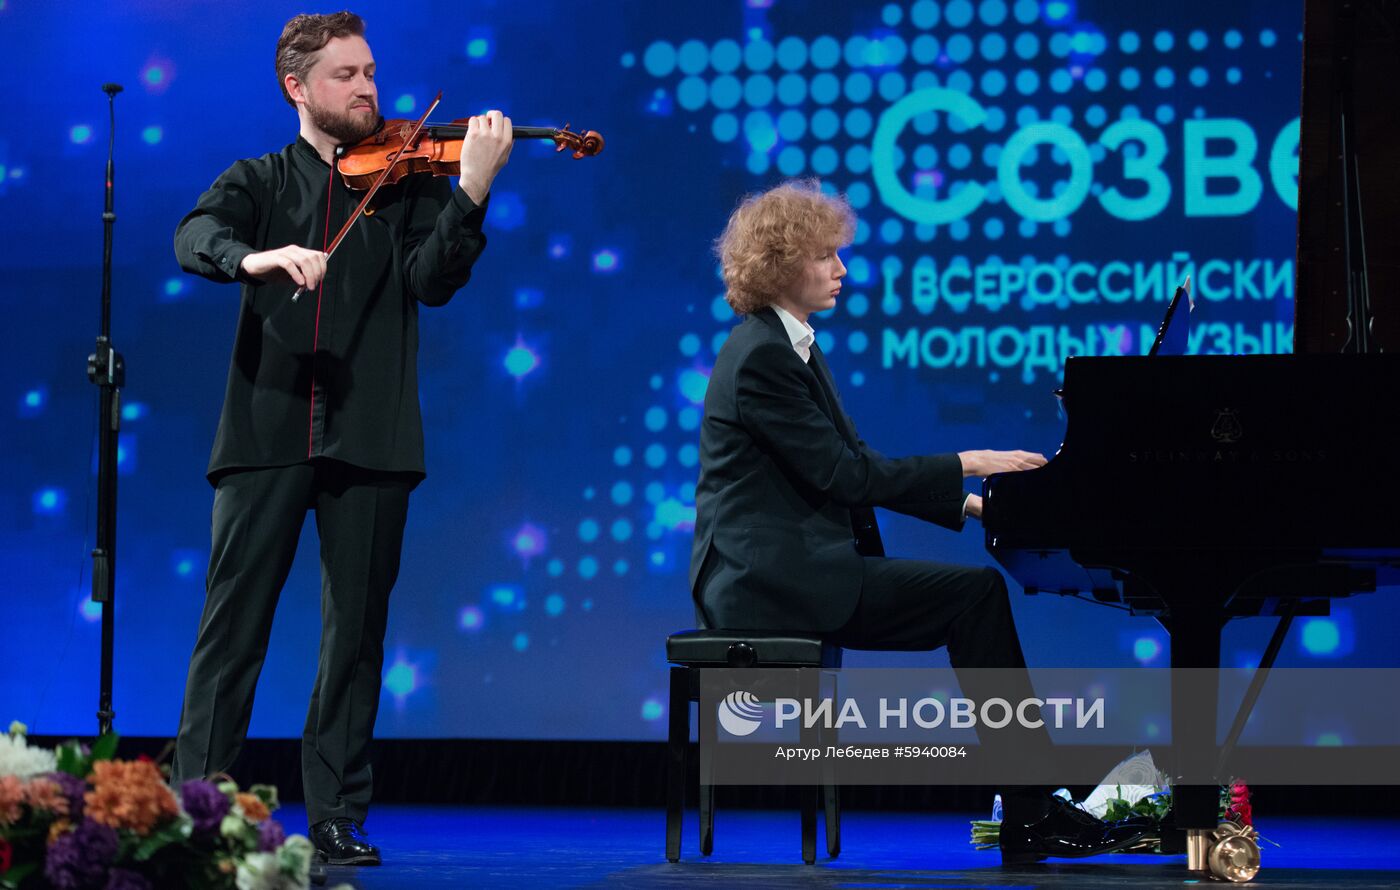 Открытие всероссийского конкурса молодых музыкантов "Созвездие"